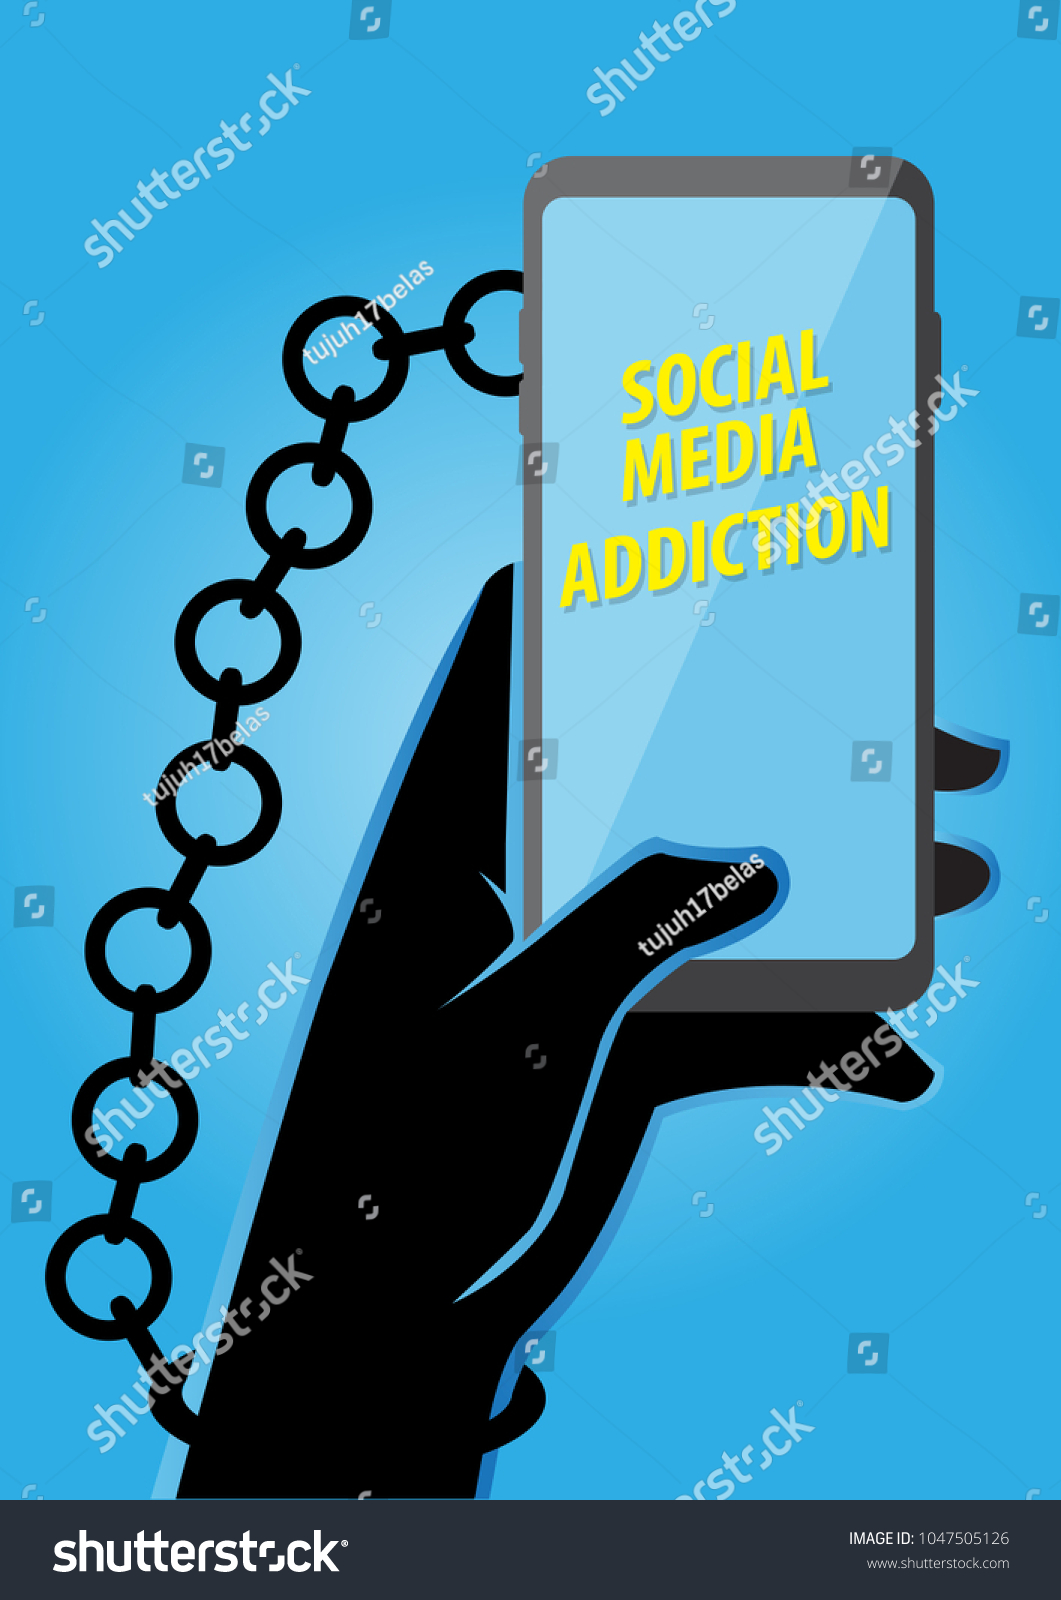 Illustration Addiction Social Media Stock Vector Royalty Free 1047505126